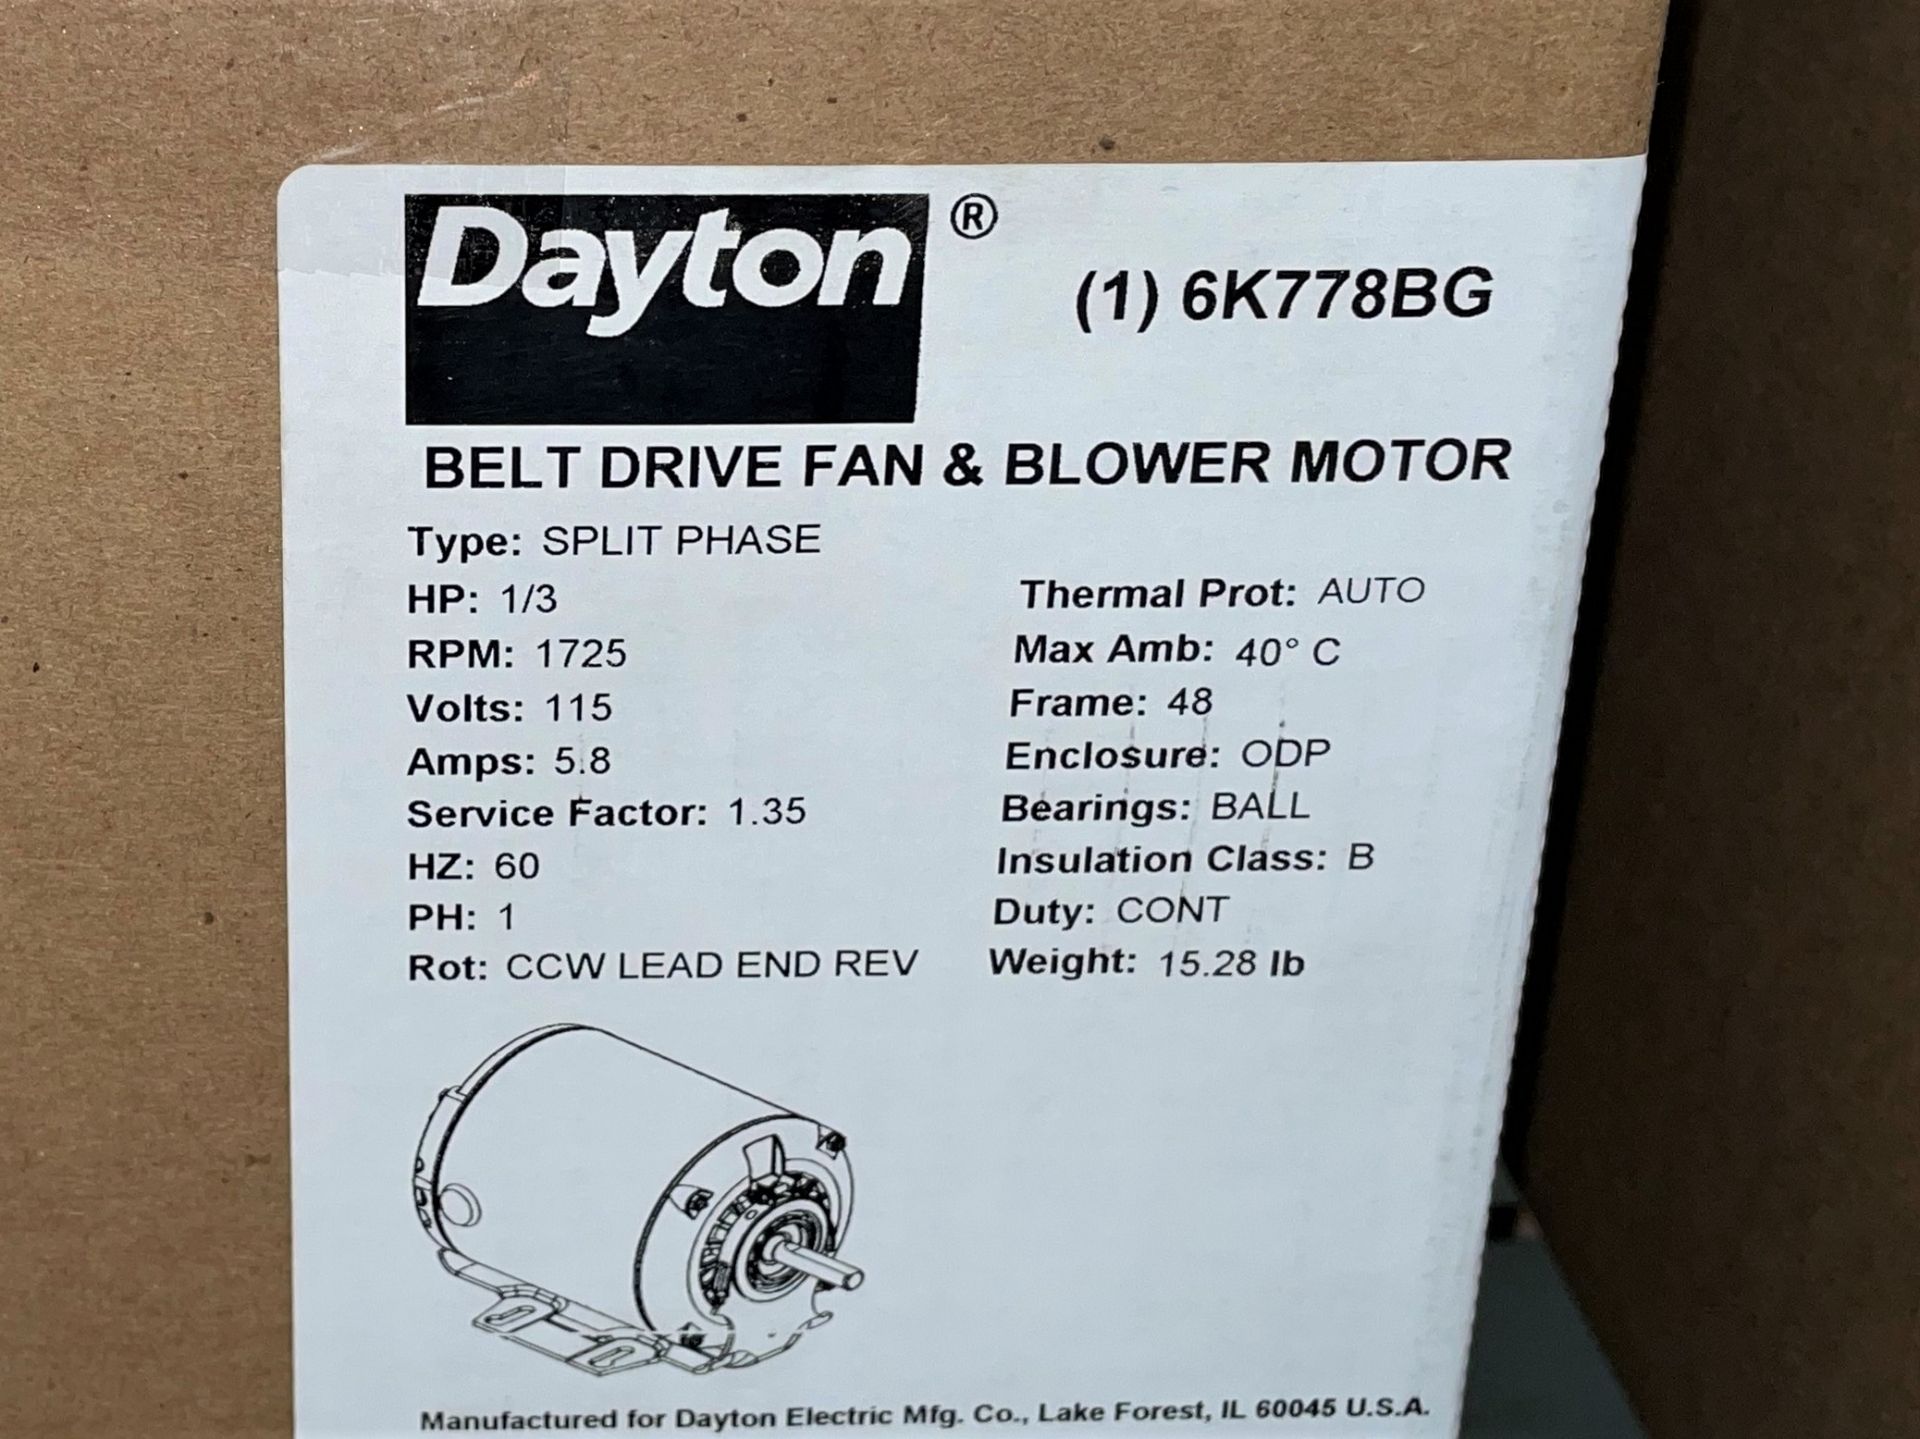 Dayton 6K778BG Belt Drive and Blower Split Phase Motor, 1/3HP - Image 3 of 3